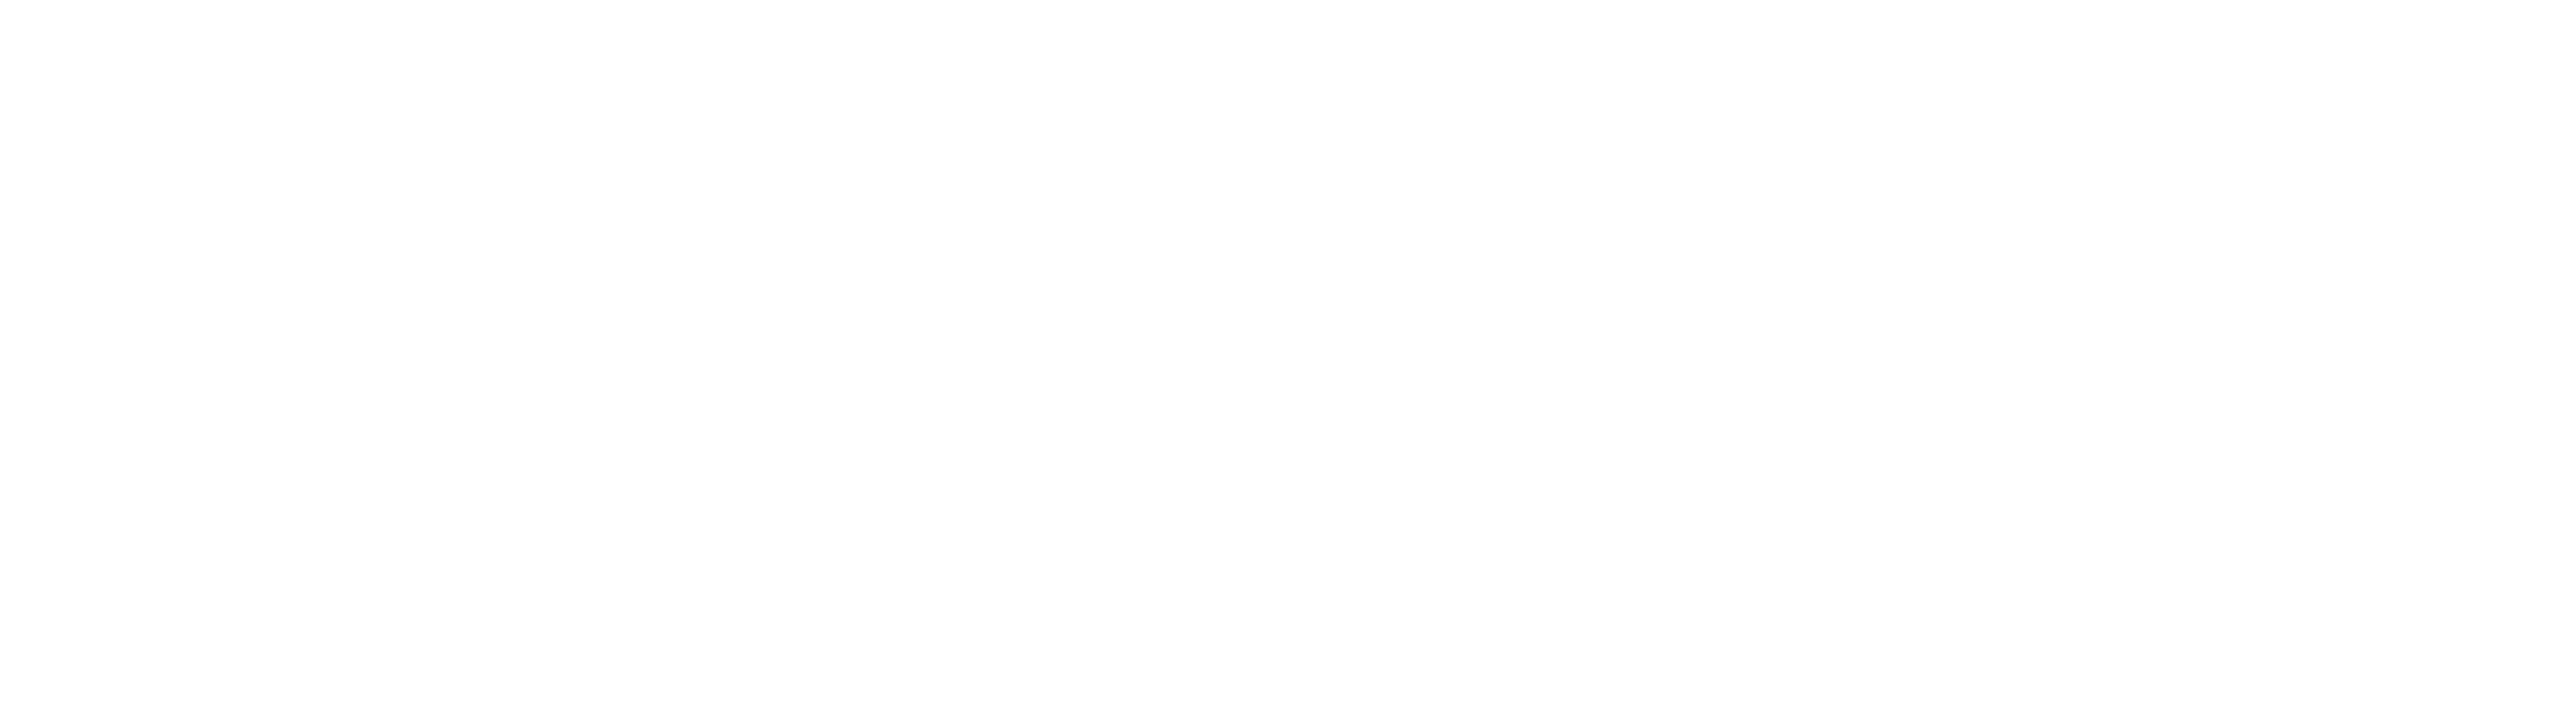 Wahoo Logo